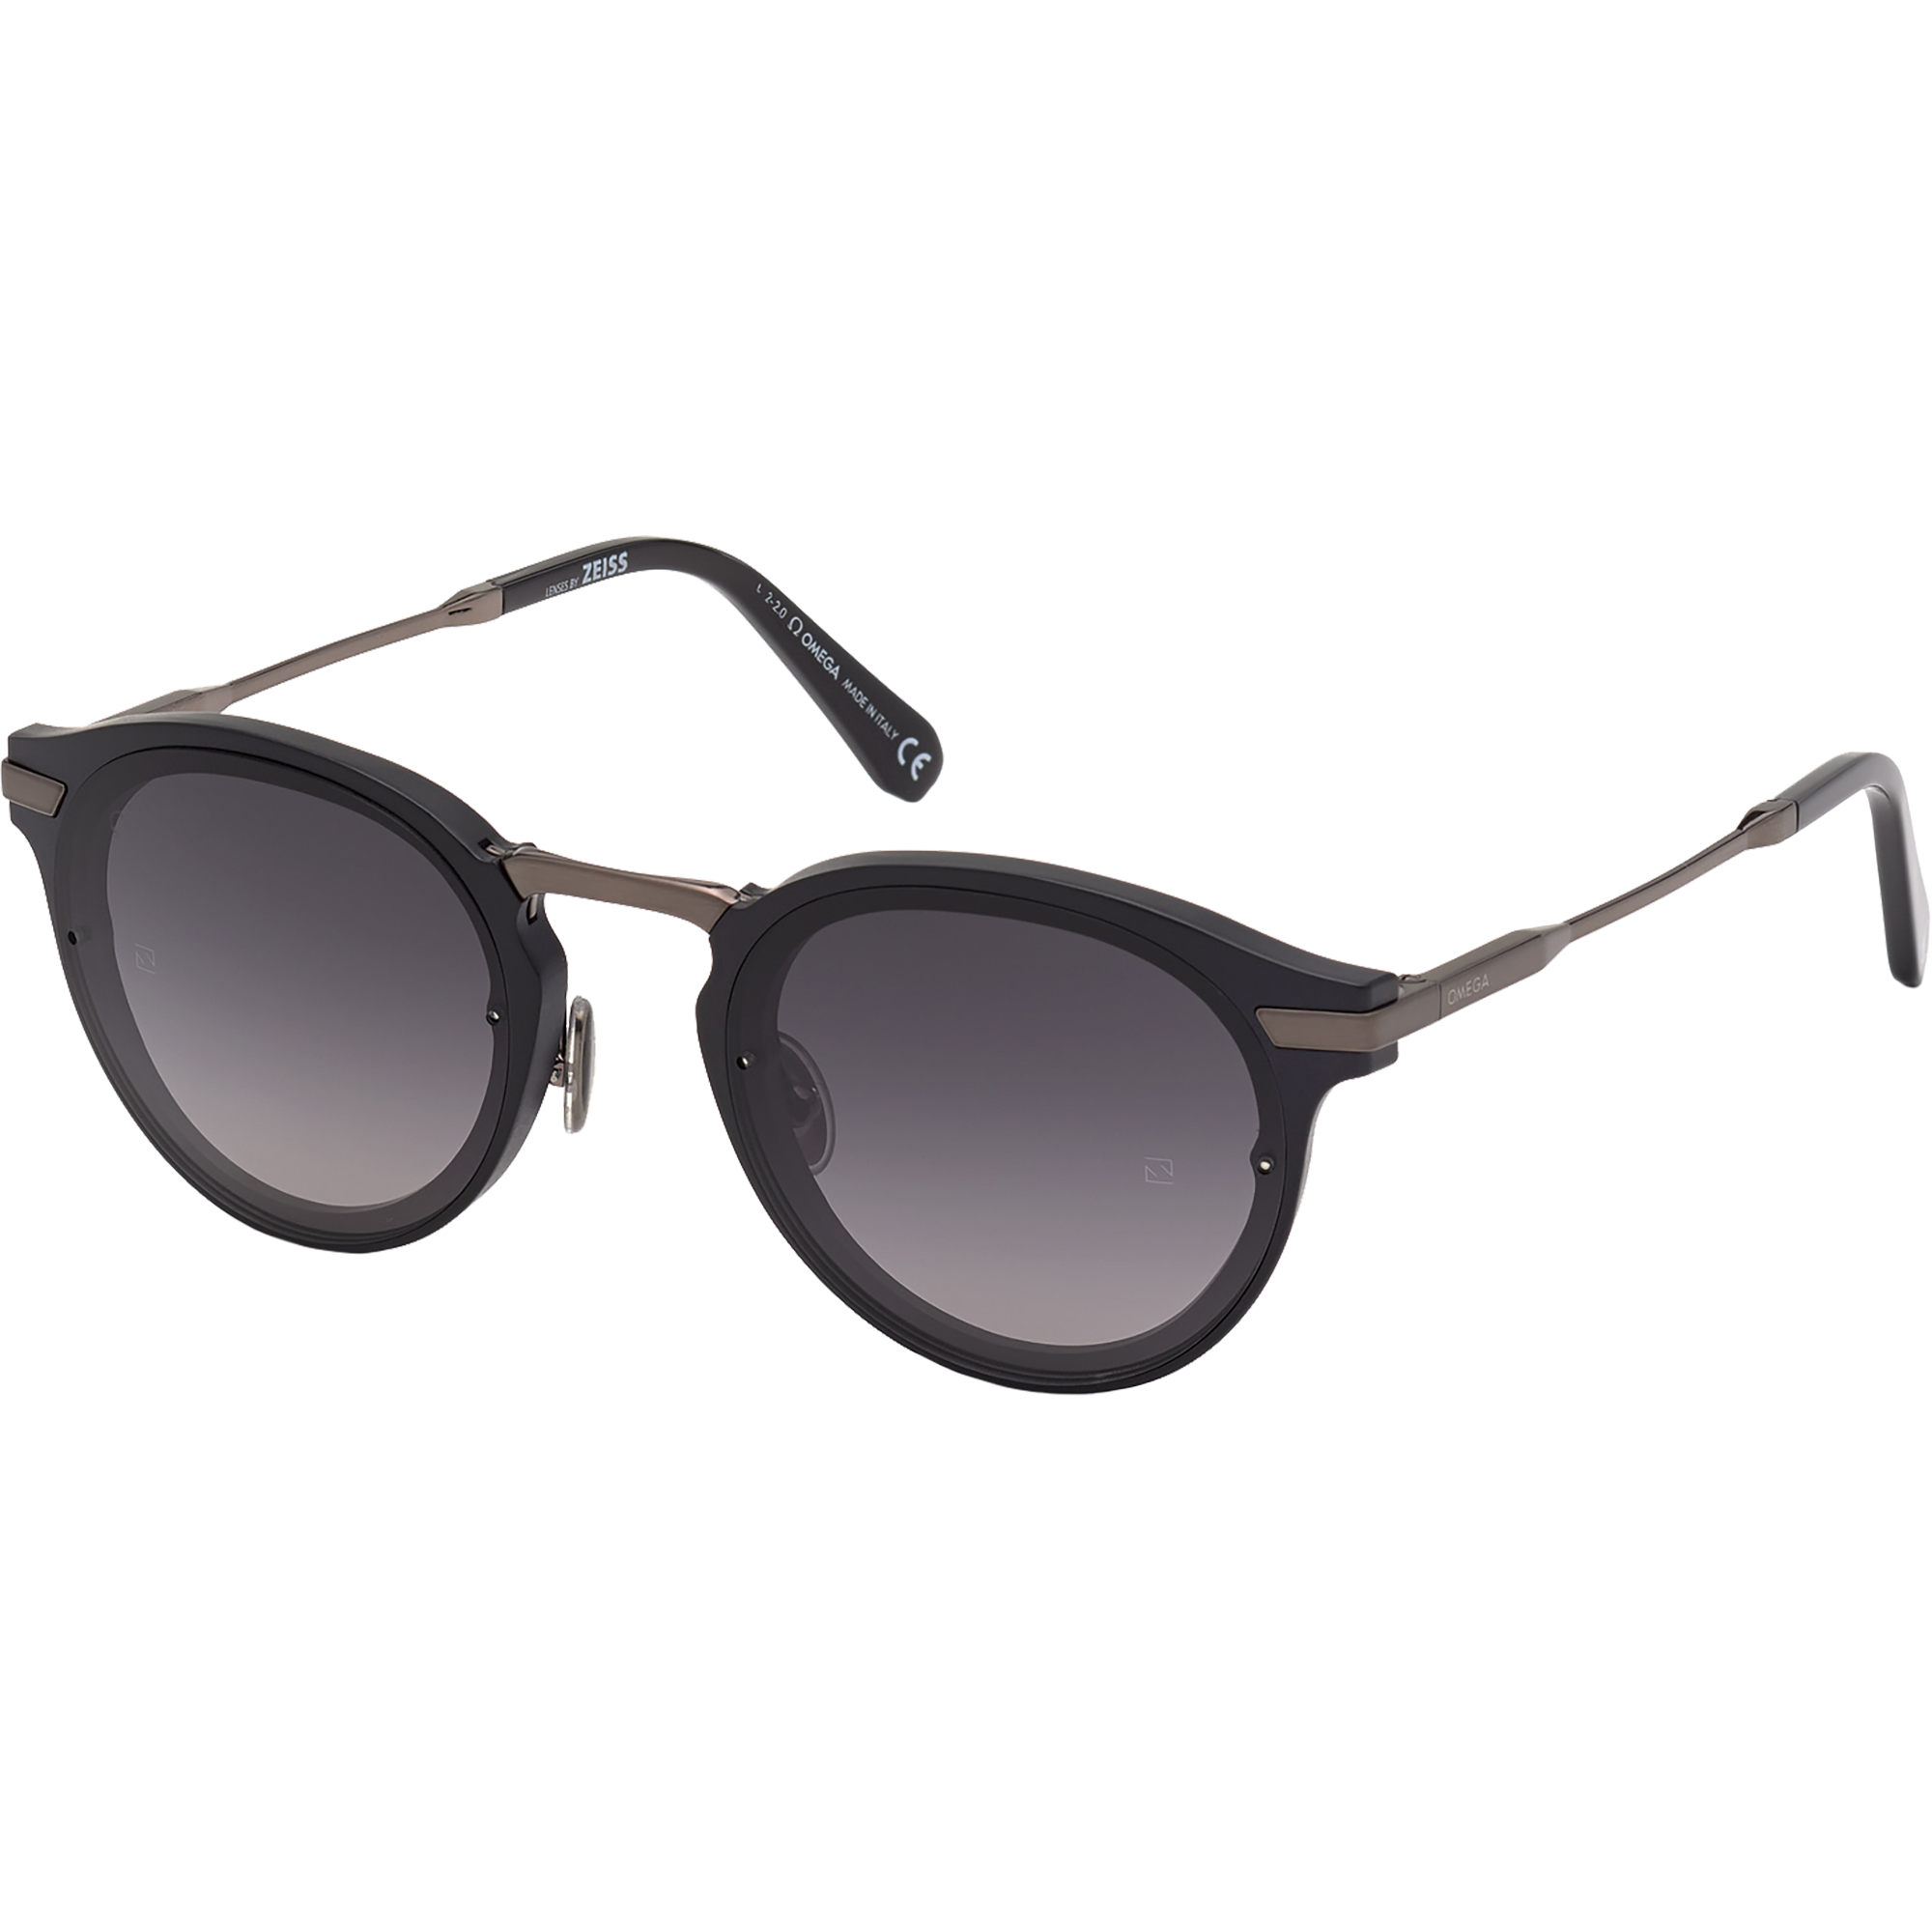 Солнцезащитные очки - Круглая форма, МУЖСКИЕ ОЧКИ - OM0029-H5491C